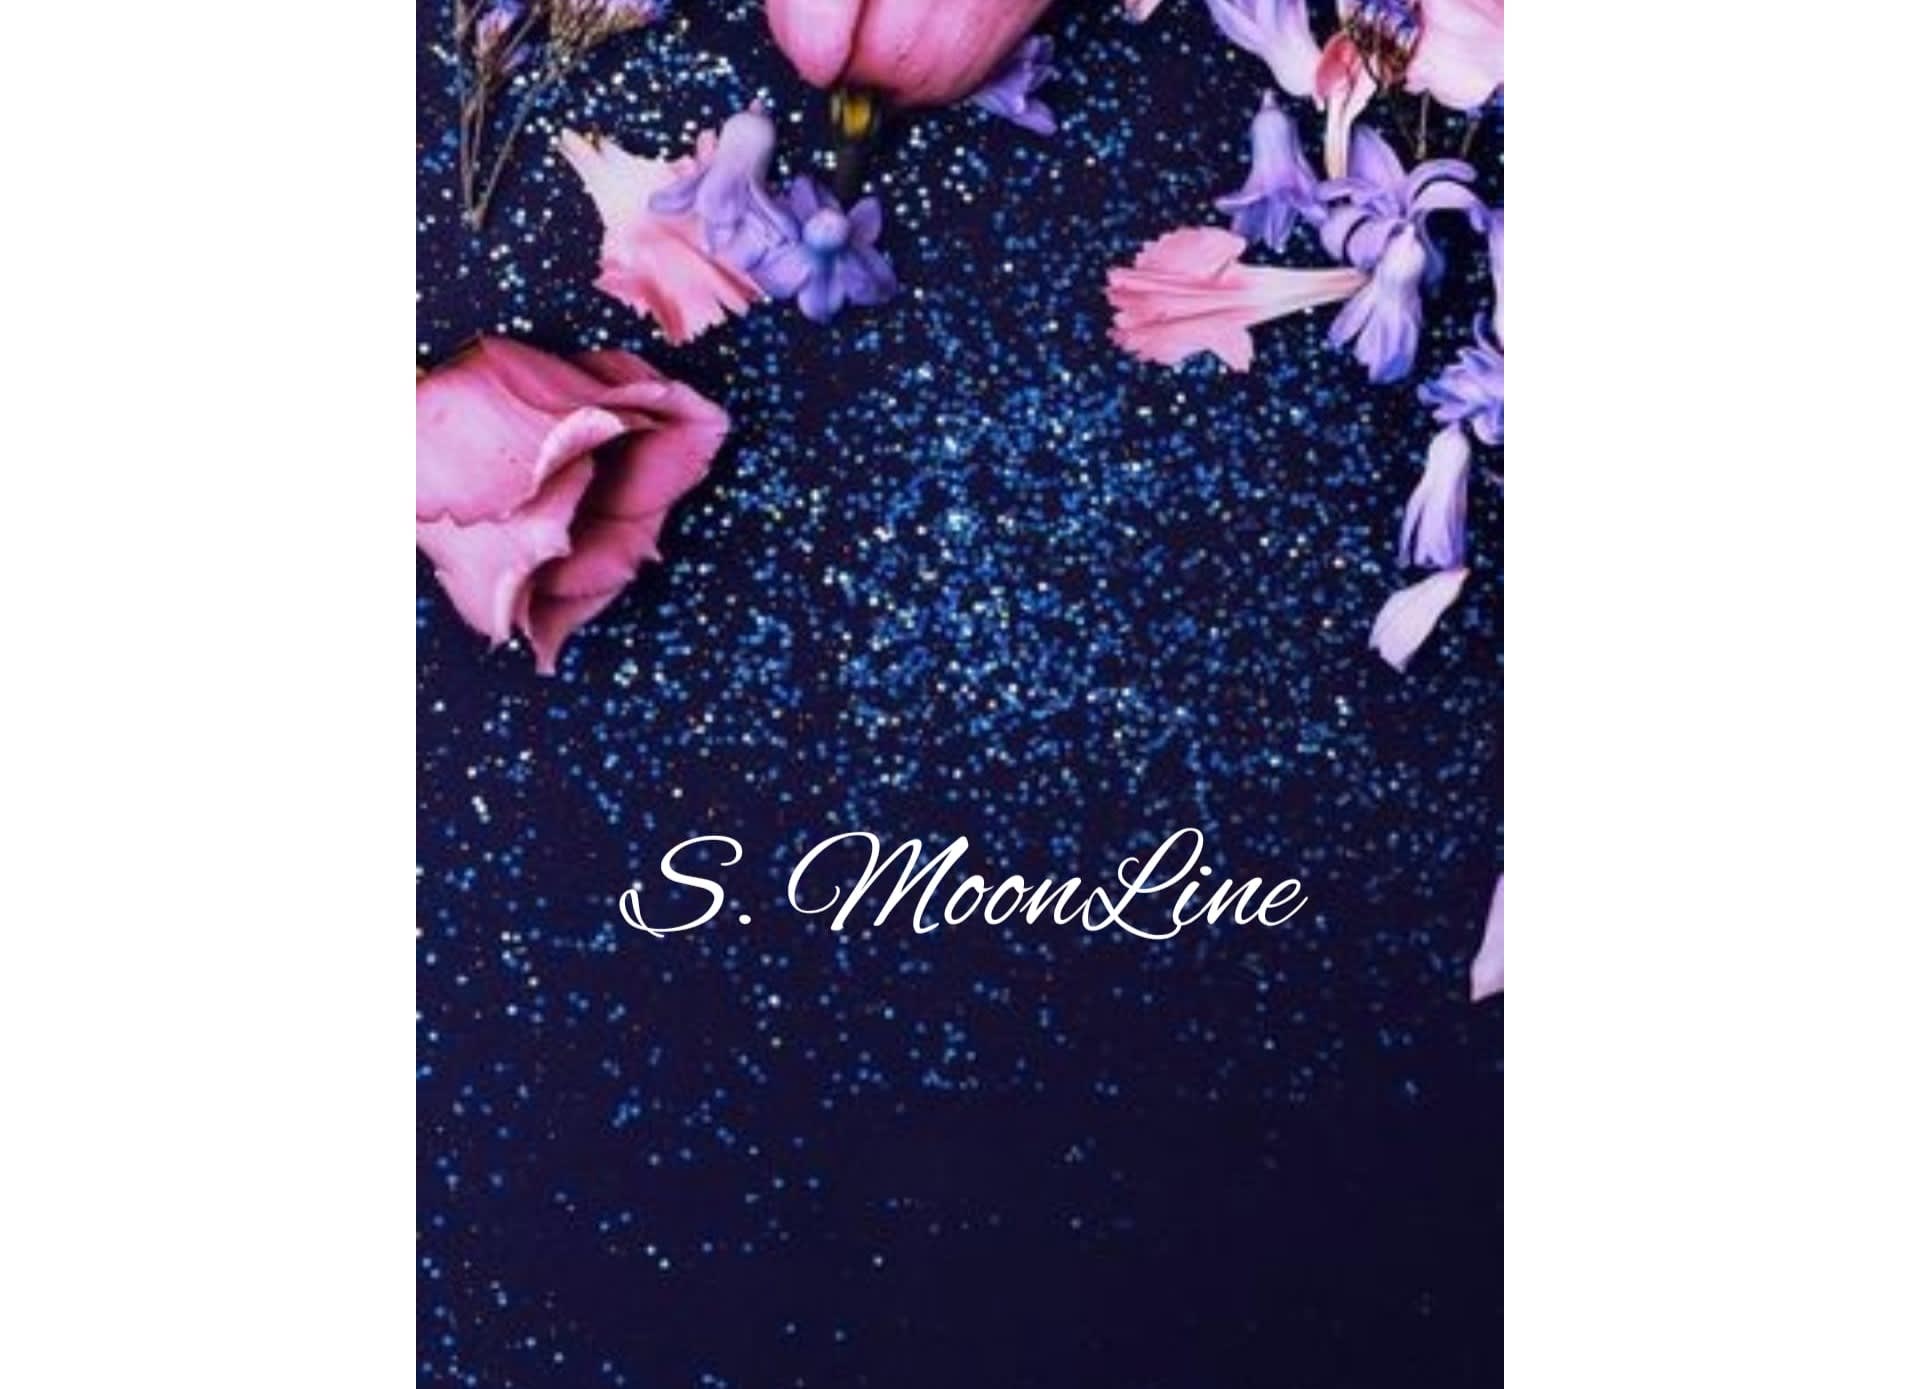 S. Moonline